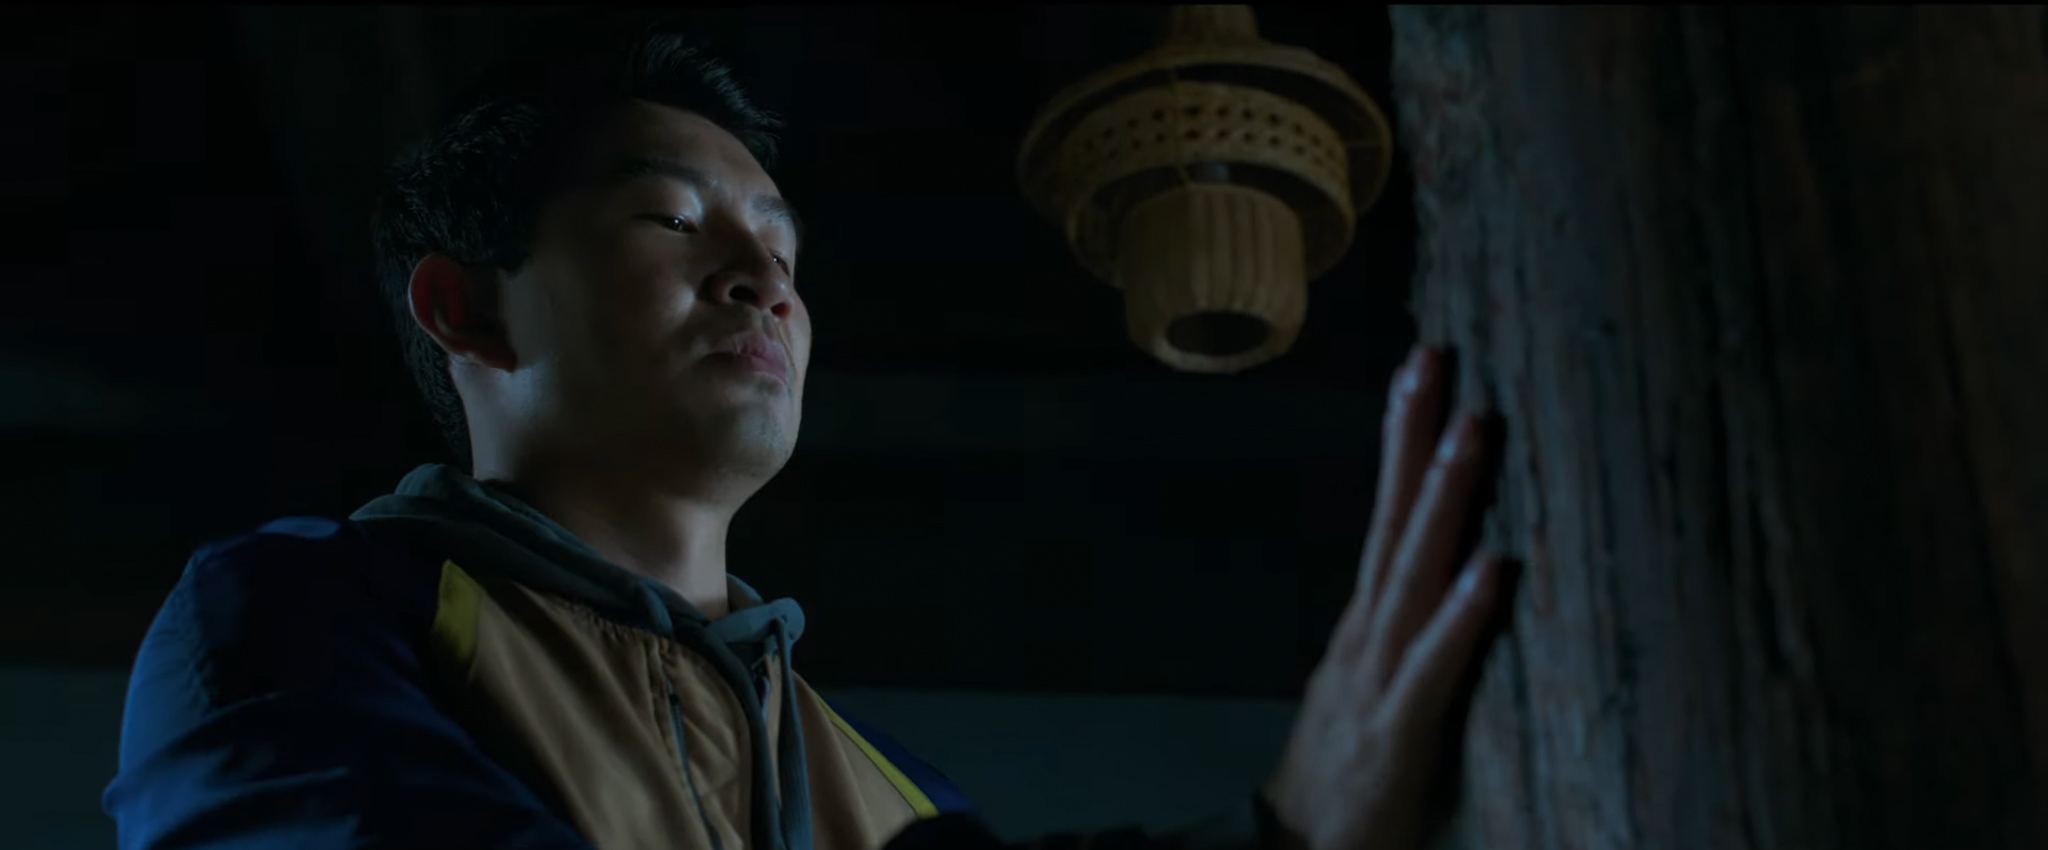 Marvel tung trailer Shang-Chi & The Legend of the Ten Rings mới, hứa hẹn màn võ thuật cực đã mắt cùng sự nguy hiểm của kẻ phản diện